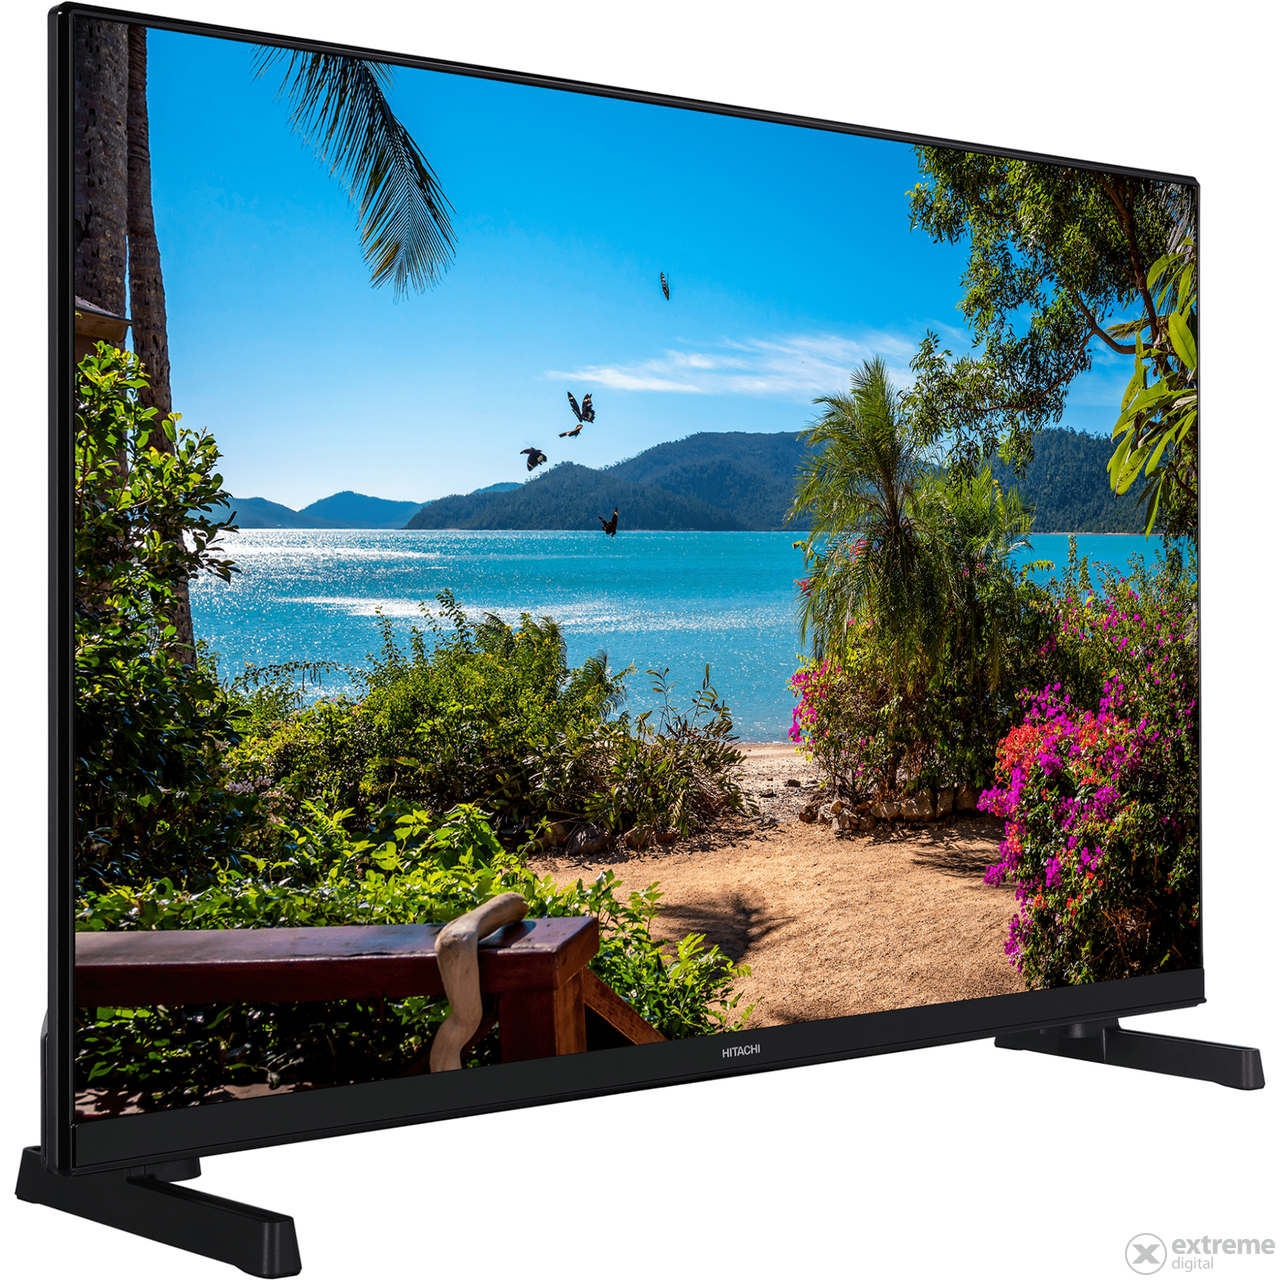 Hitachi 32HE4300 Full HD Smart LED TV, 80 cm